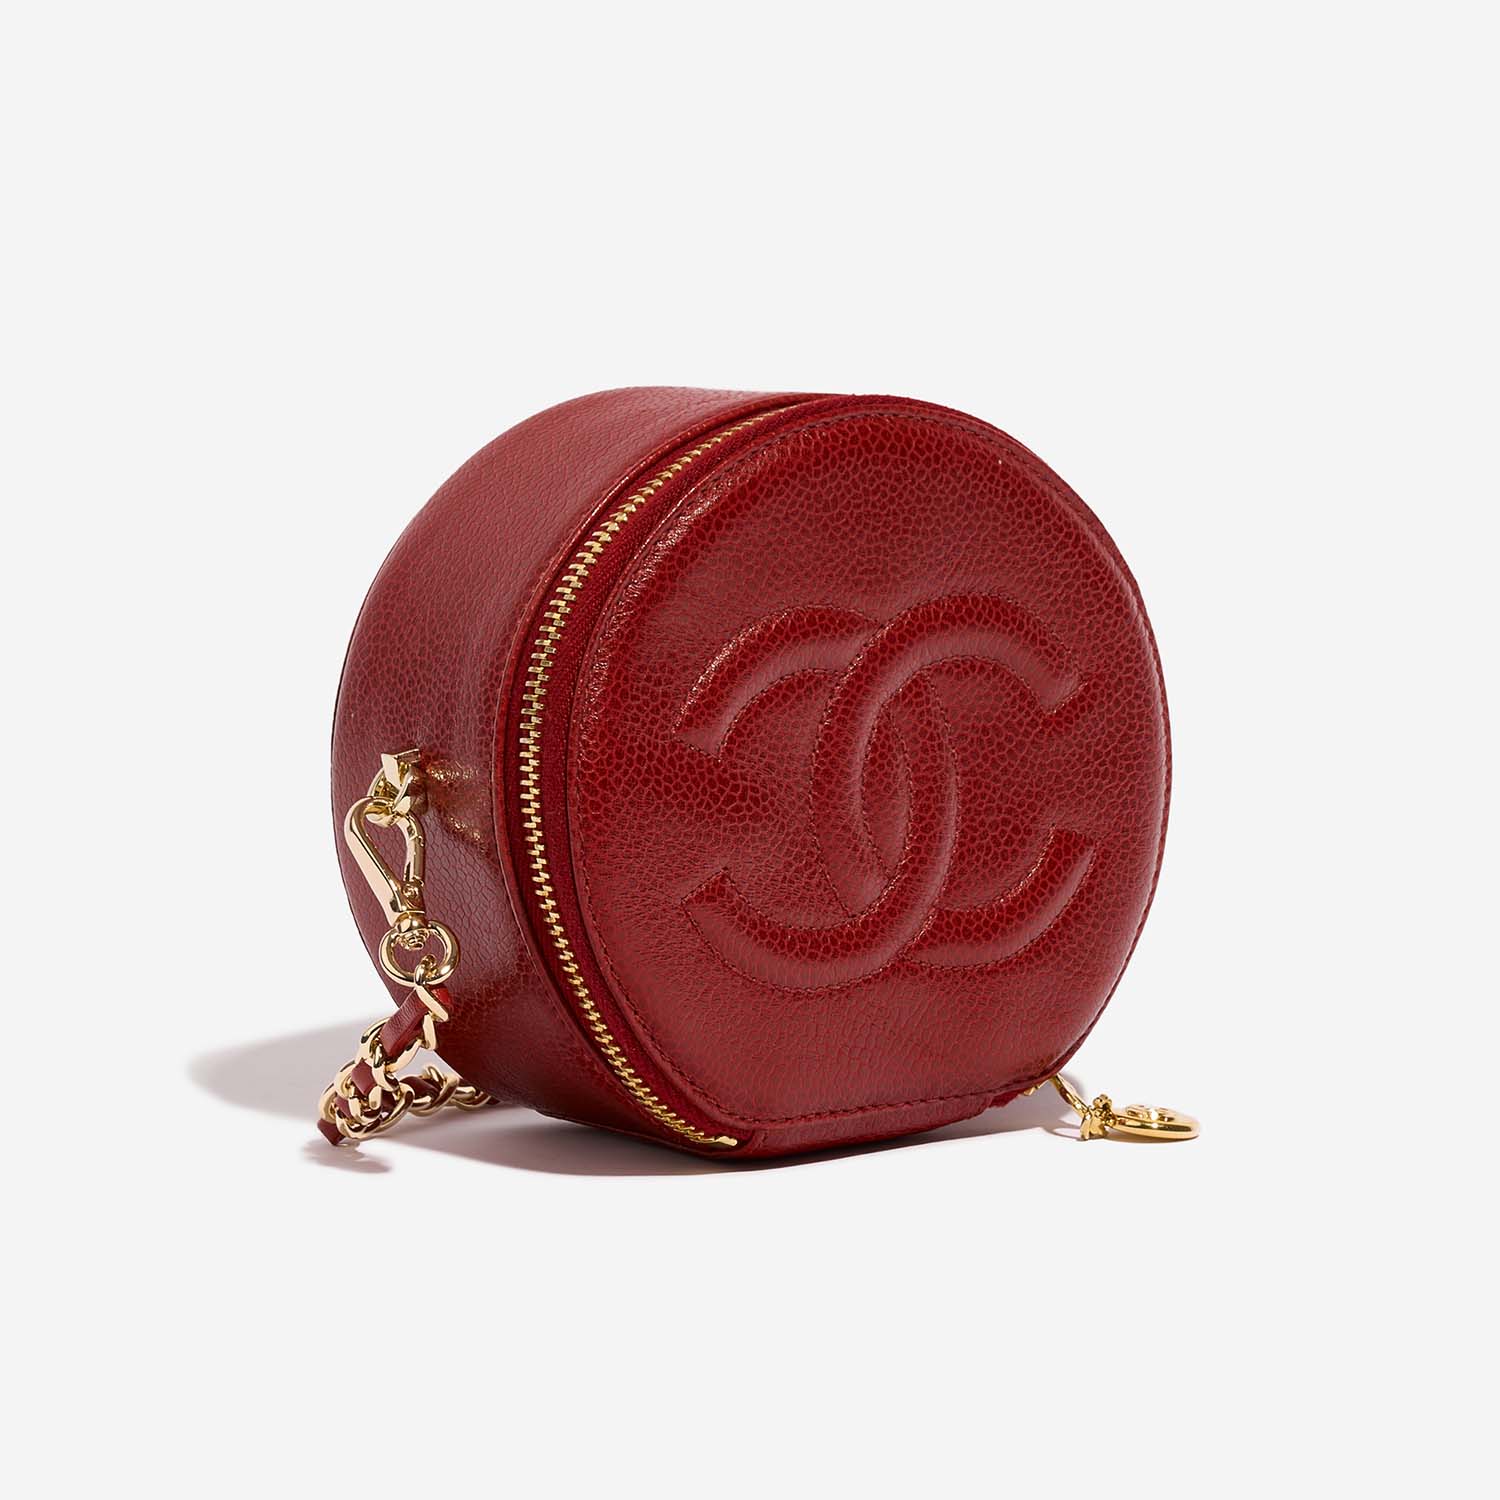 Chanel Vanity klein Rot Side Front | Verkaufen Sie Ihre Designer-Tasche auf Saclab.com